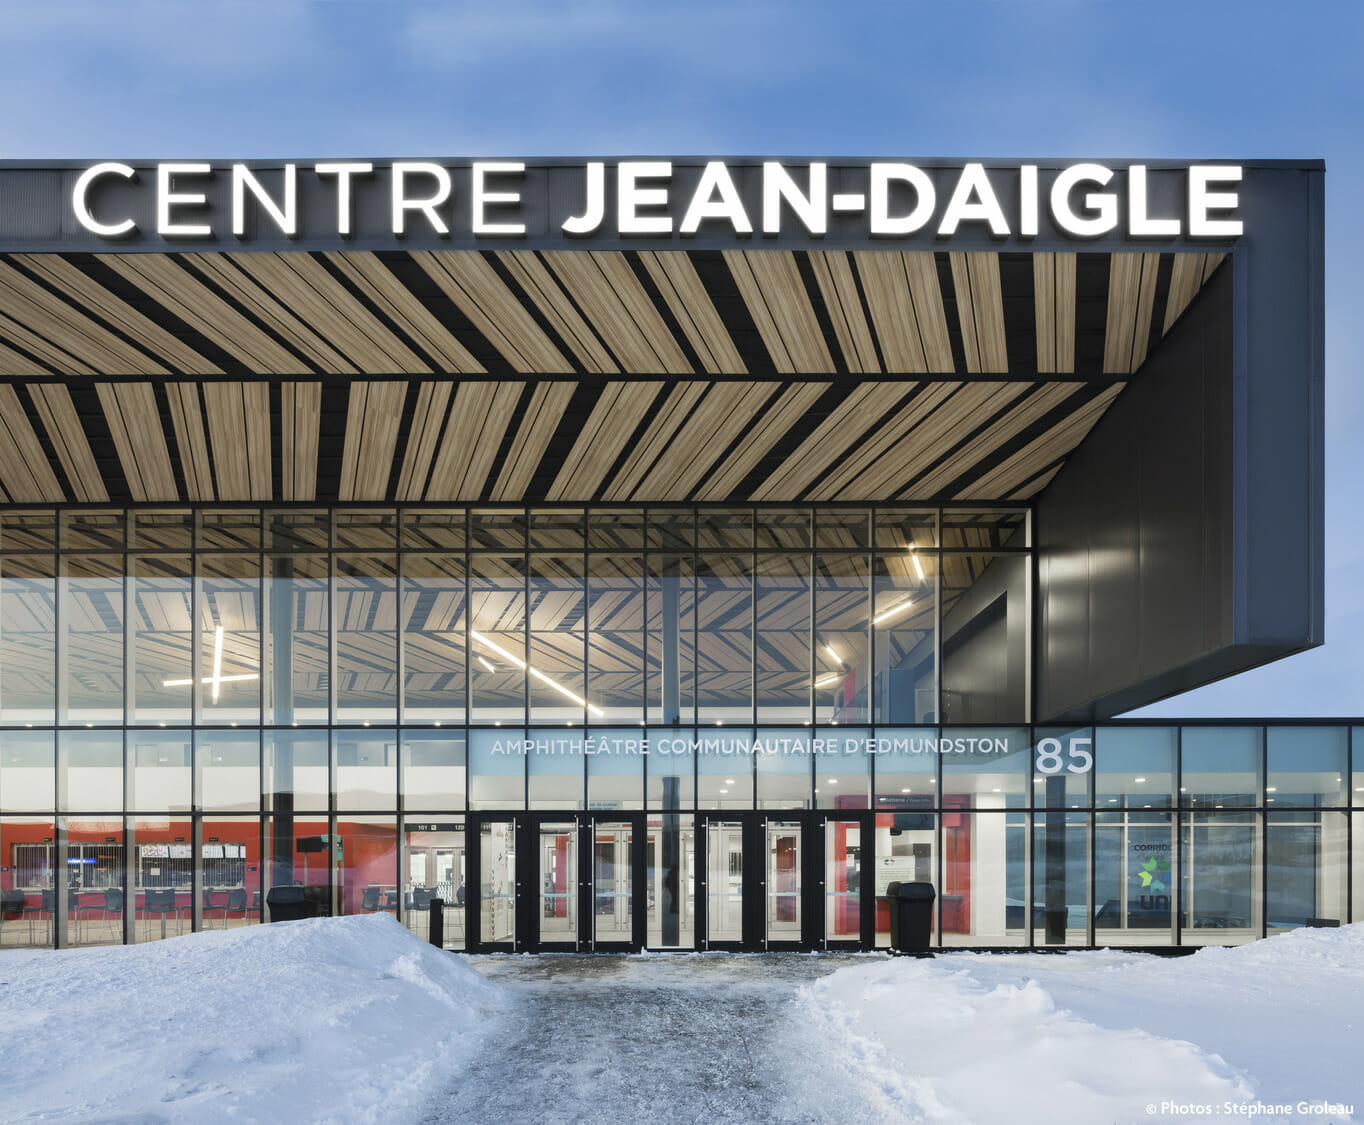 Un bâtiment avec de la neige dessus et une pancarte indiquant centre jean-daigle.